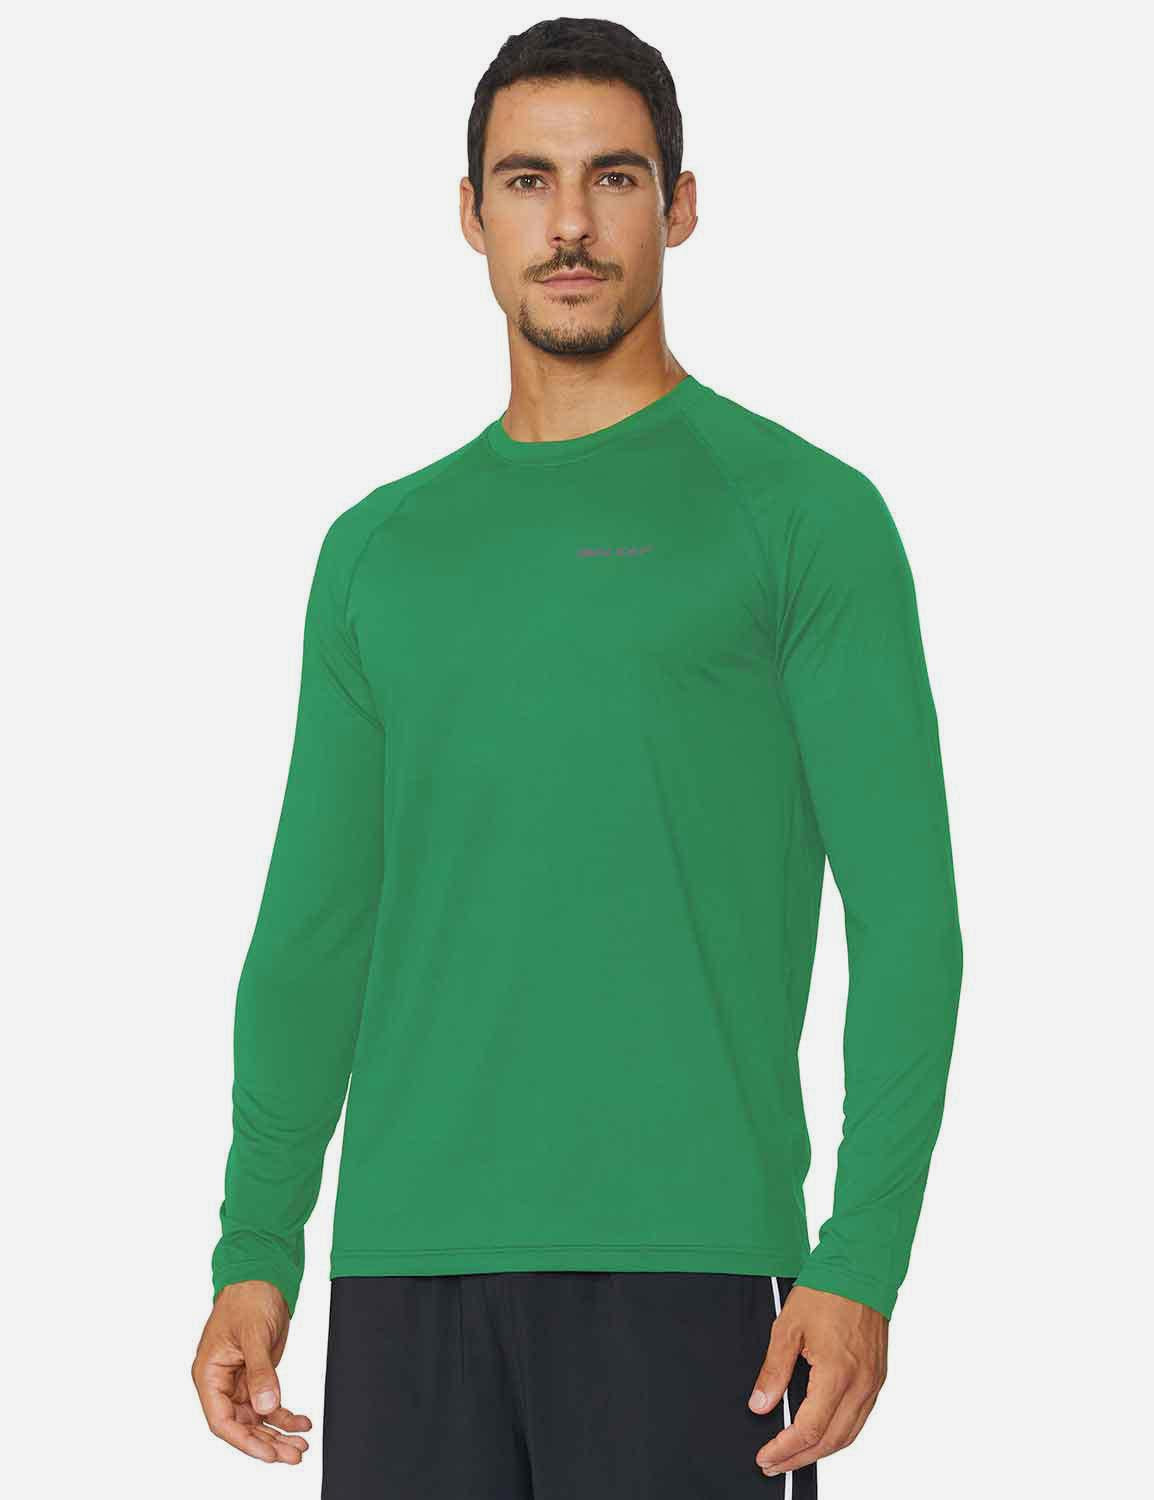 Baleaf Men's Workout Crew-Neck Slim-Cut Long Sleeved Shirt abd195 Forest Green Side